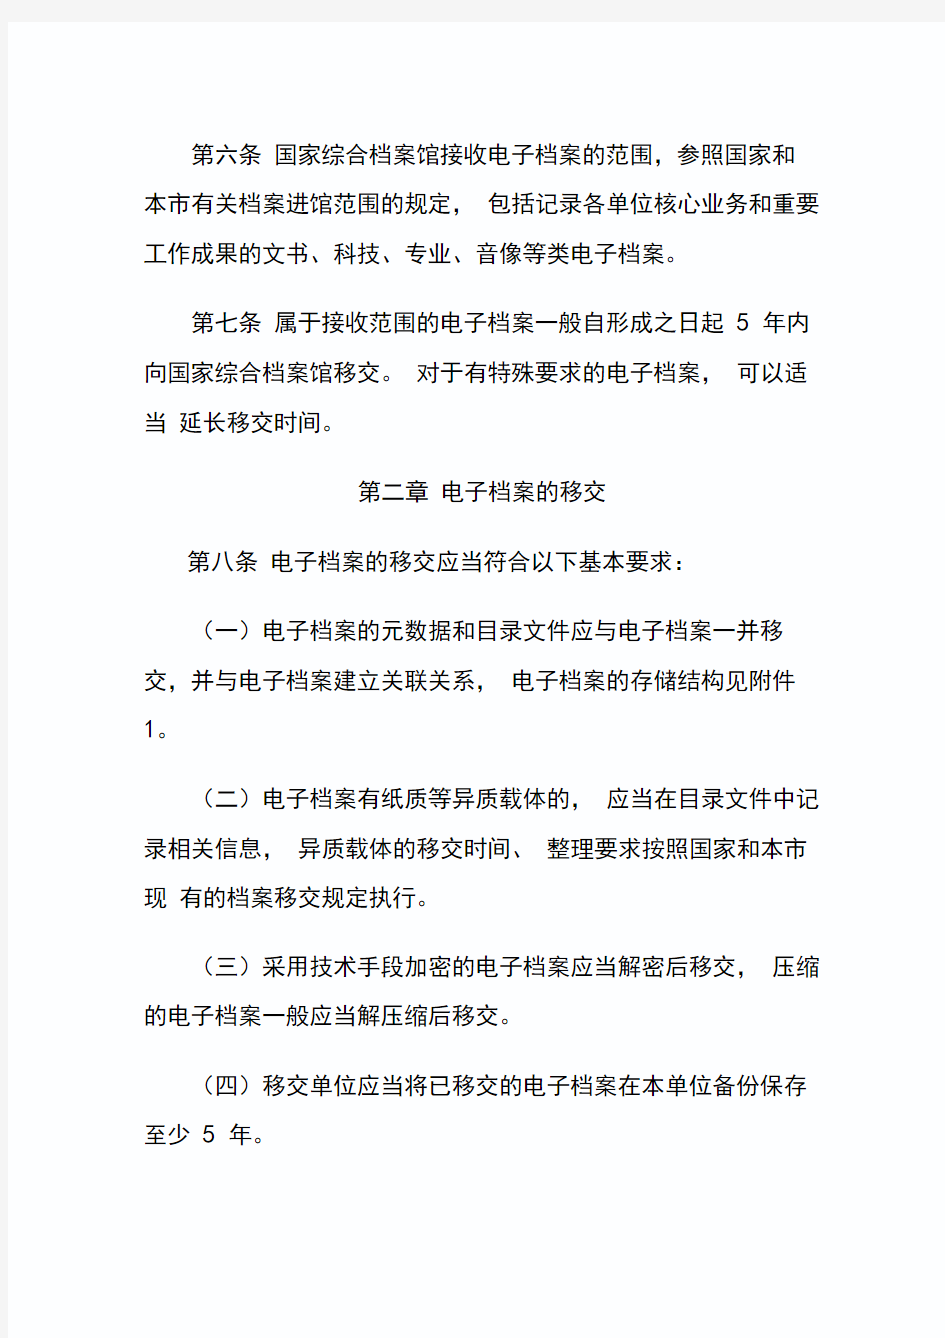 上海市电子档案移交和接收管理办法